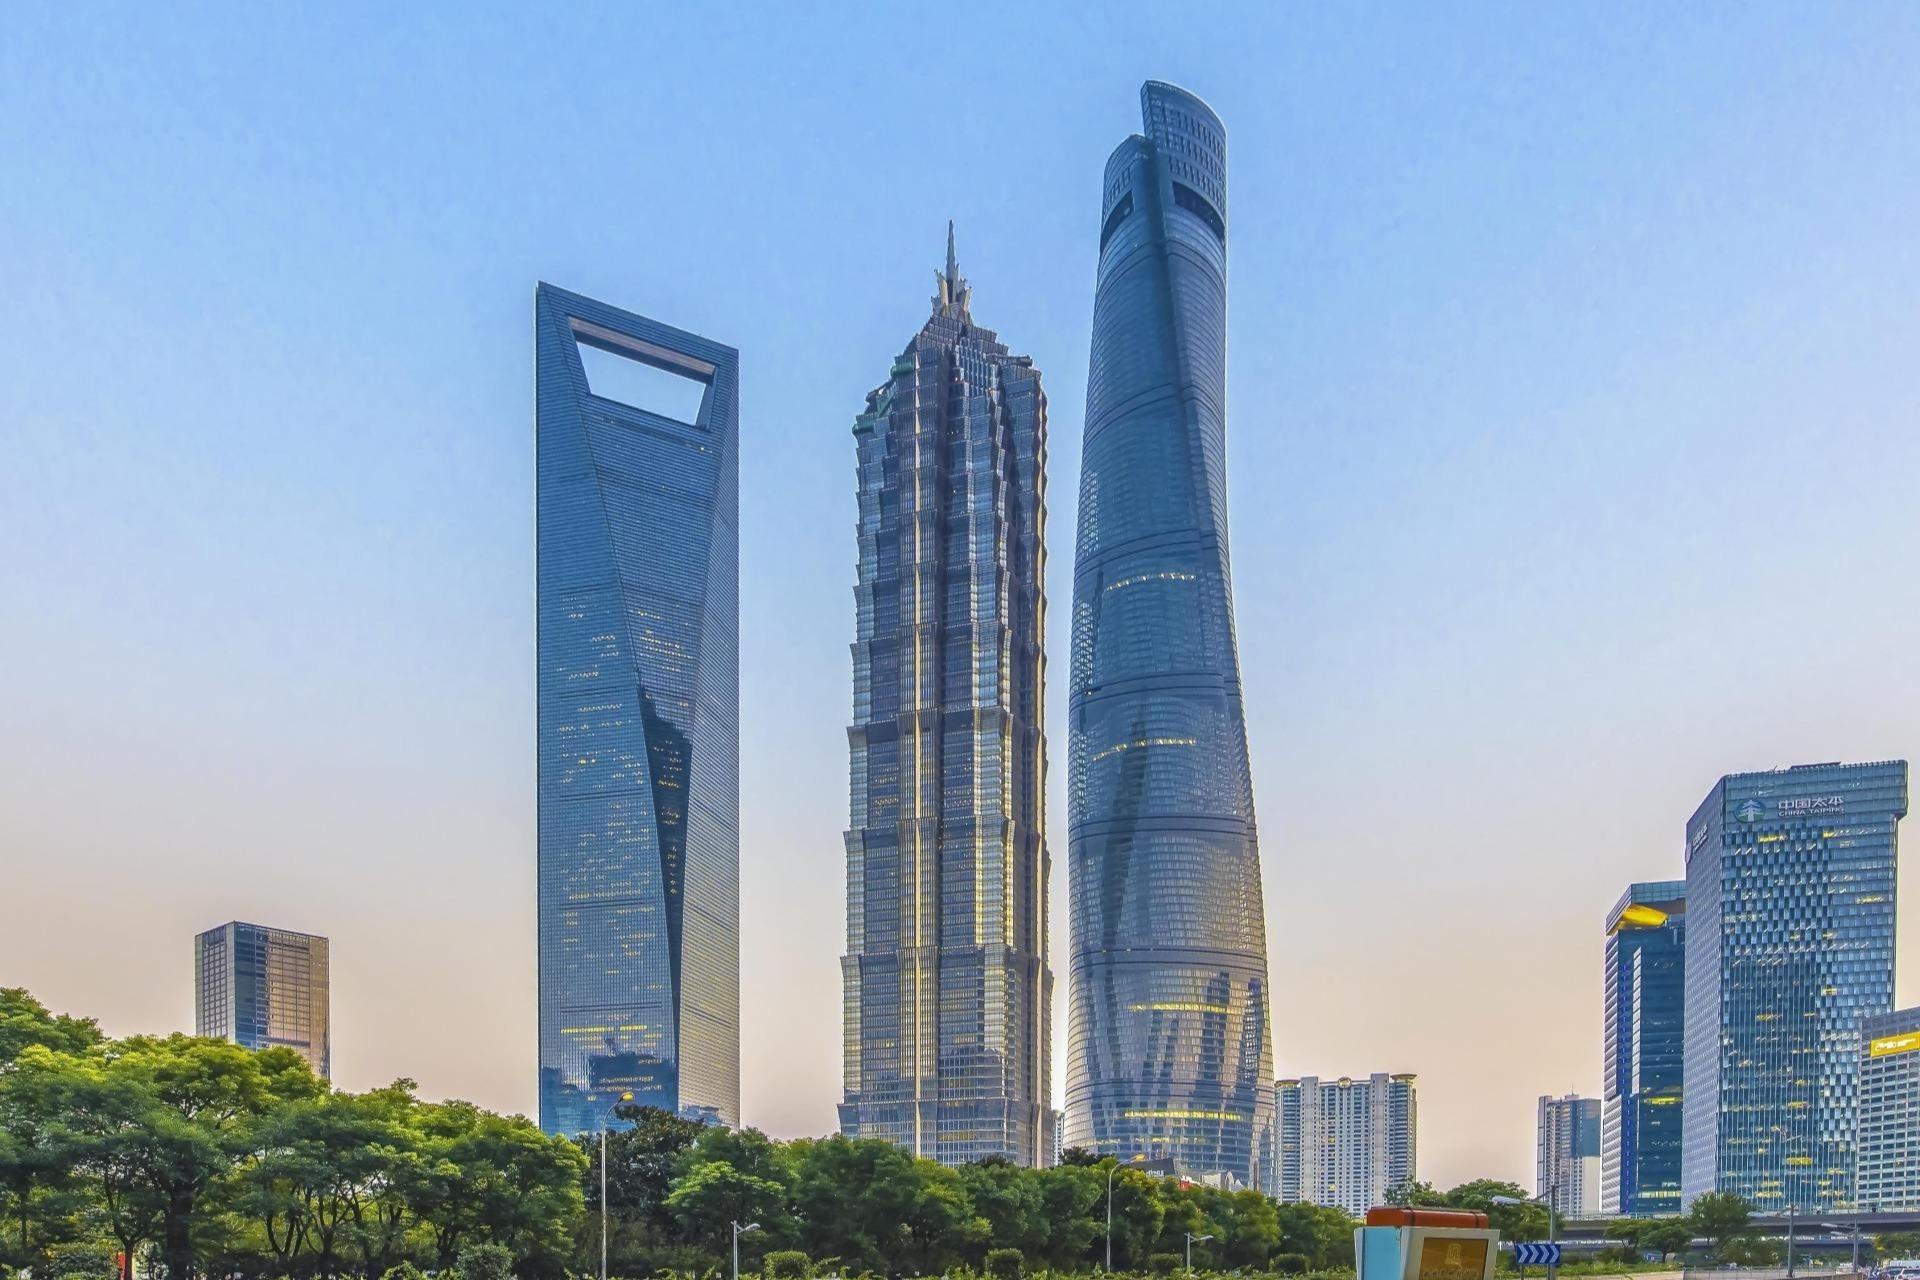 上海地标性建筑,东方明珠塔是否值得一去?